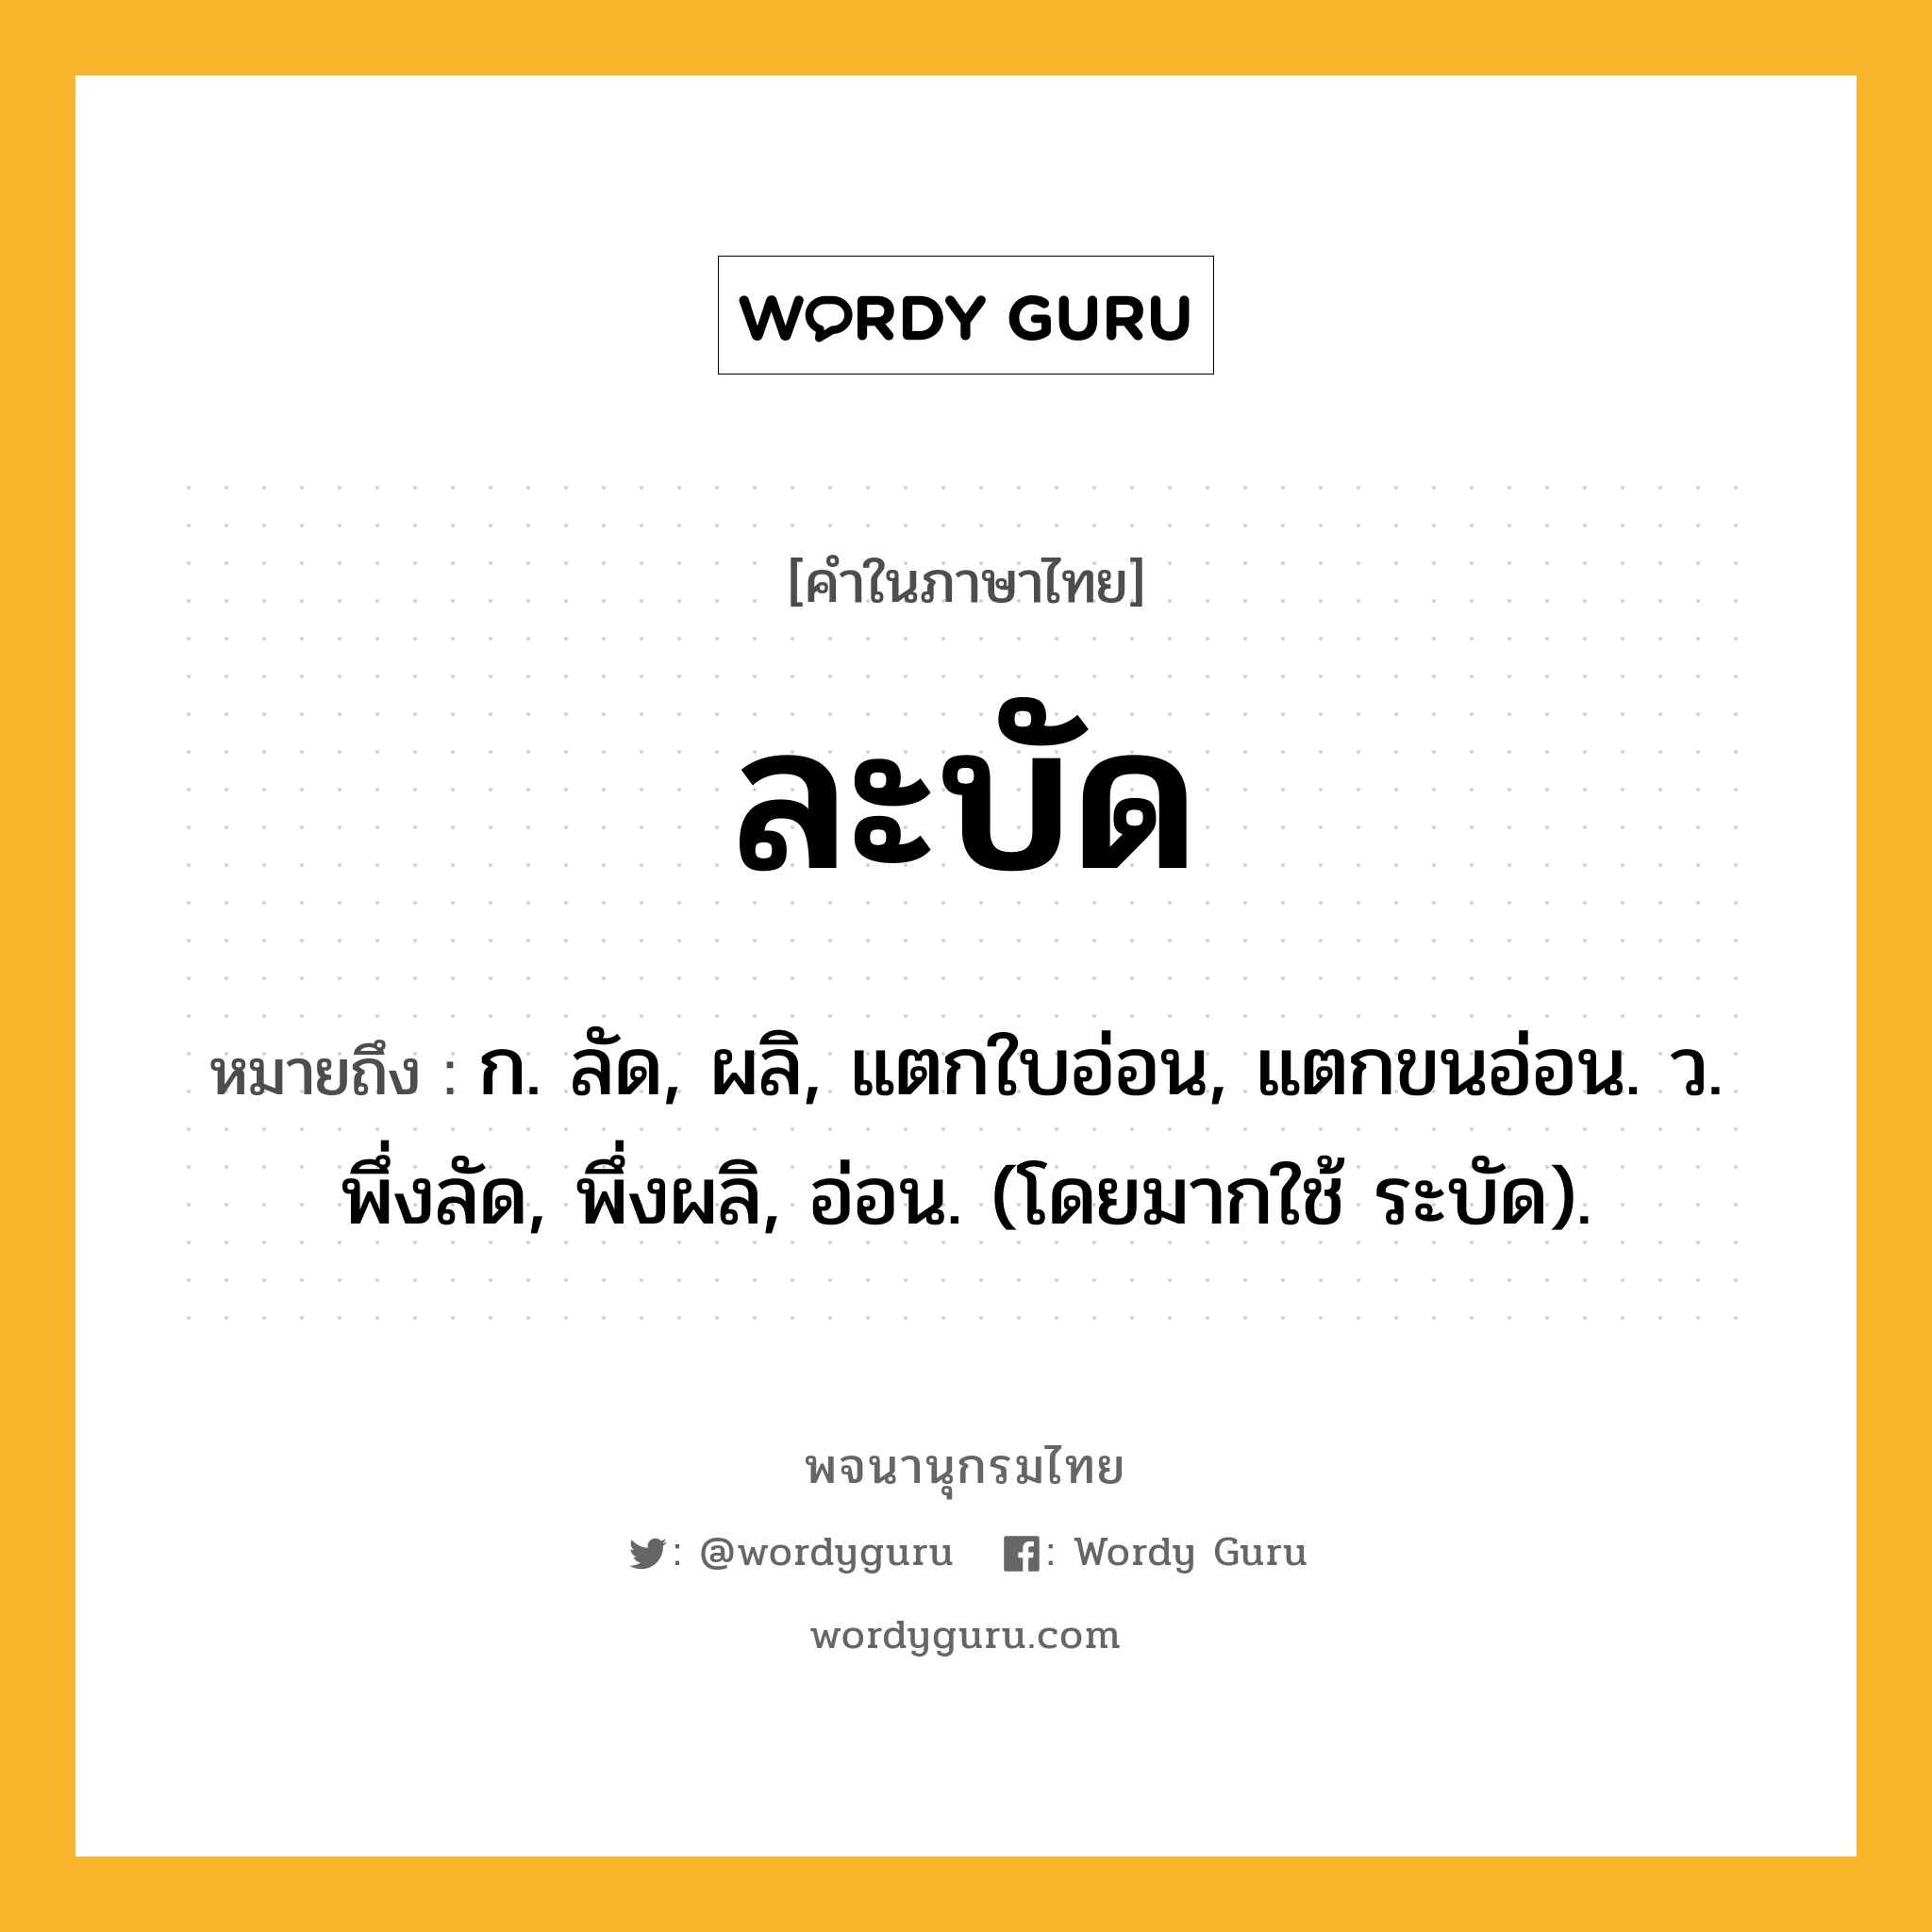 ละบัด ความหมาย หมายถึงอะไร?, คำในภาษาไทย ละบัด หมายถึง ก. ลัด, ผลิ, แตกใบอ่อน, แตกขนอ่อน. ว. พึ่งลัด, พึ่งผลิ, อ่อน. (โดยมากใช้ ระบัด).